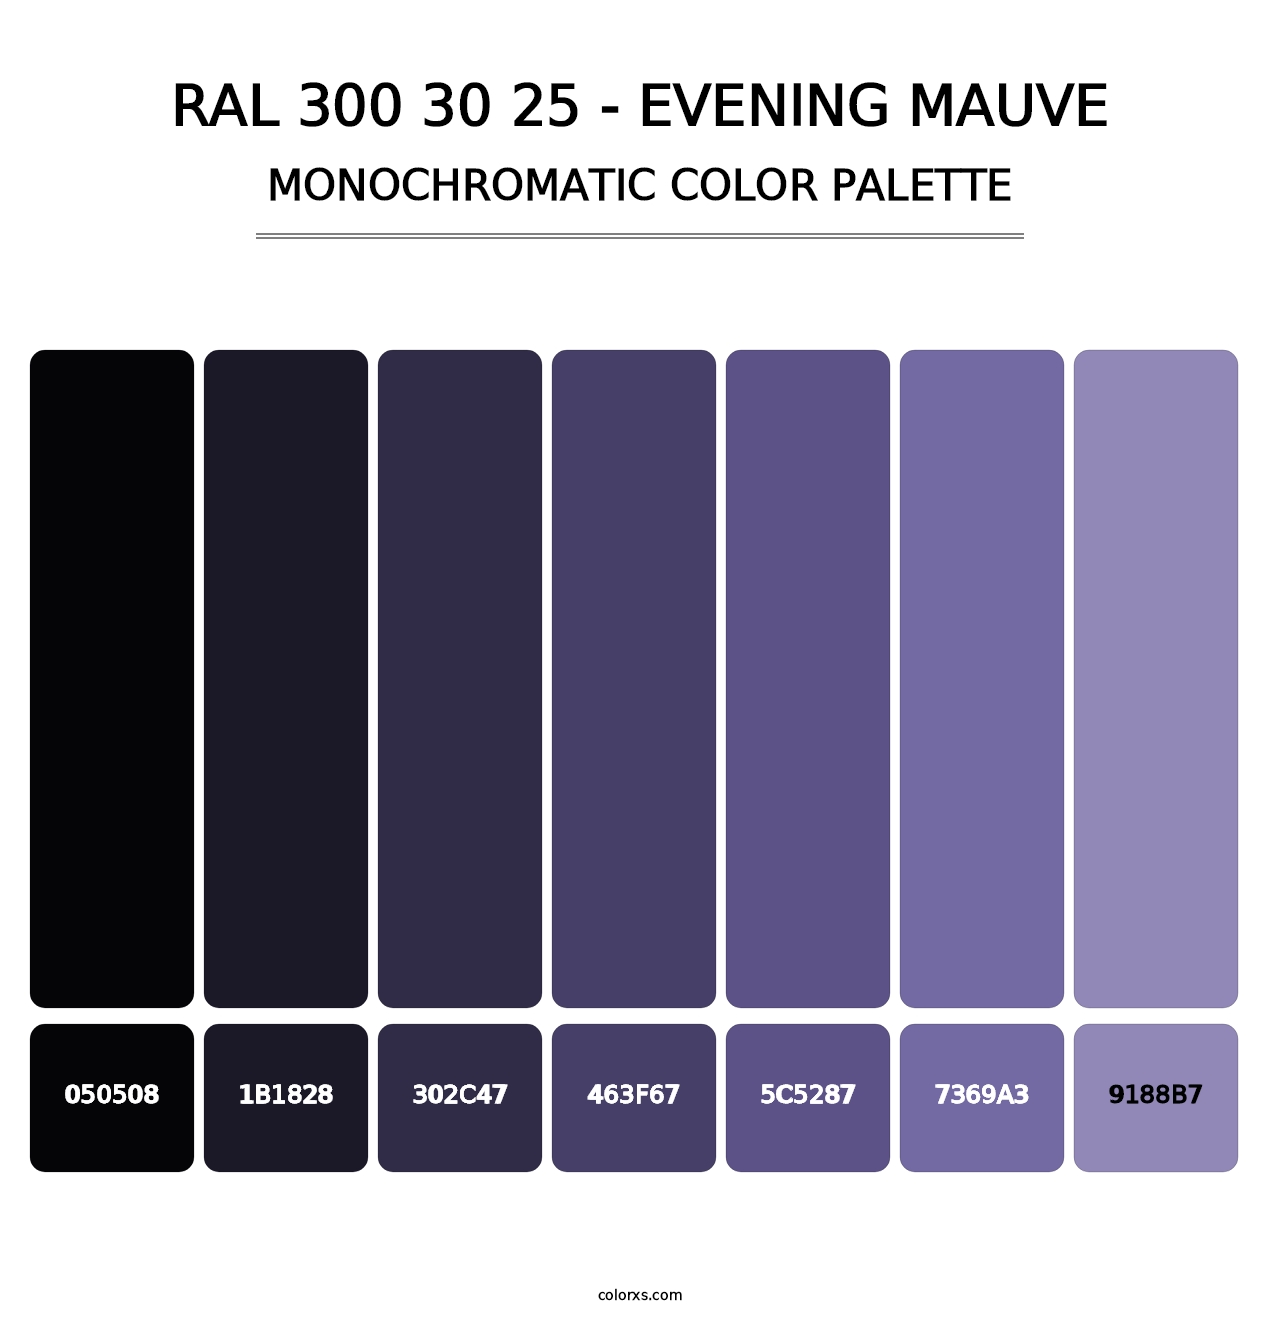 RAL 300 30 25 - Evening Mauve - Monochromatic Color Palette